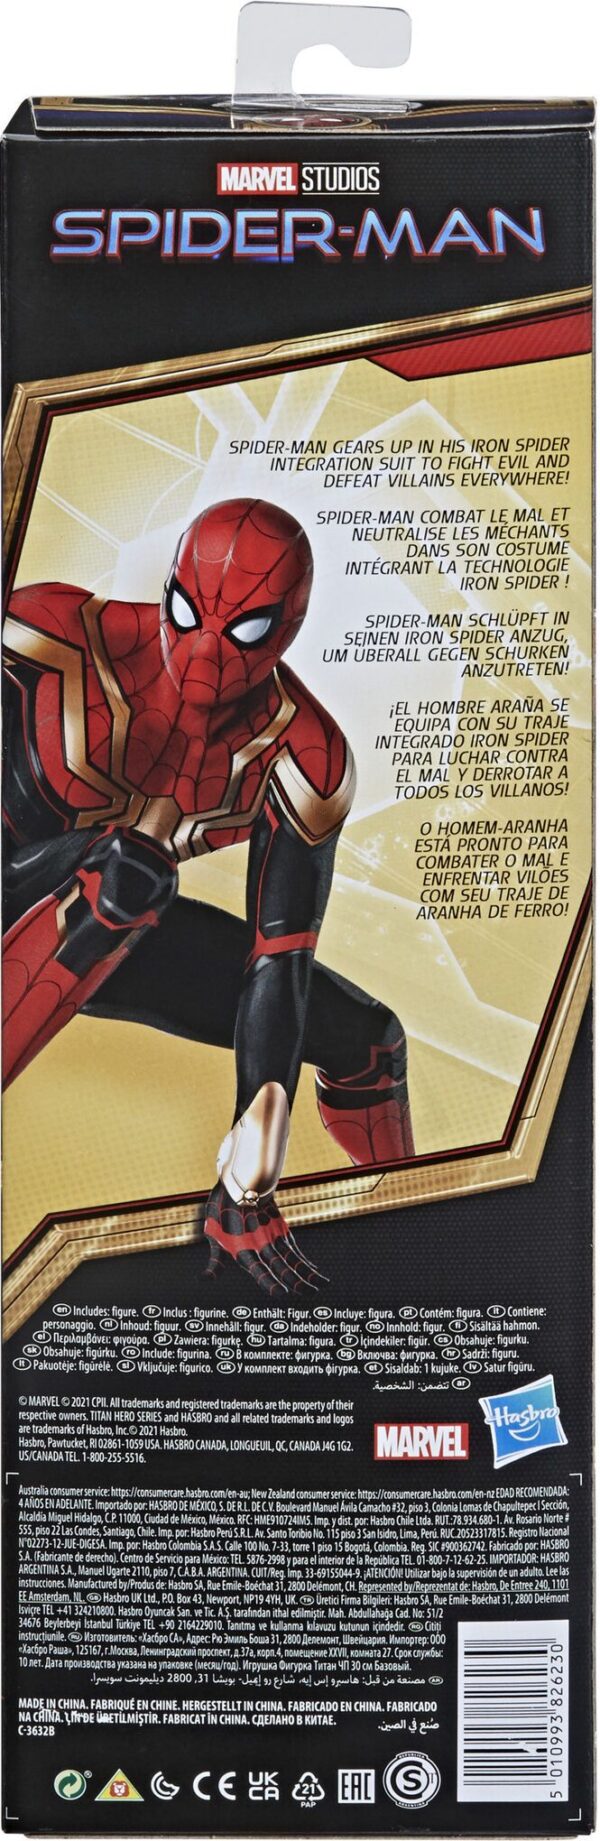 F0233 Marvel Spider-Man Titan Hero Series Figure